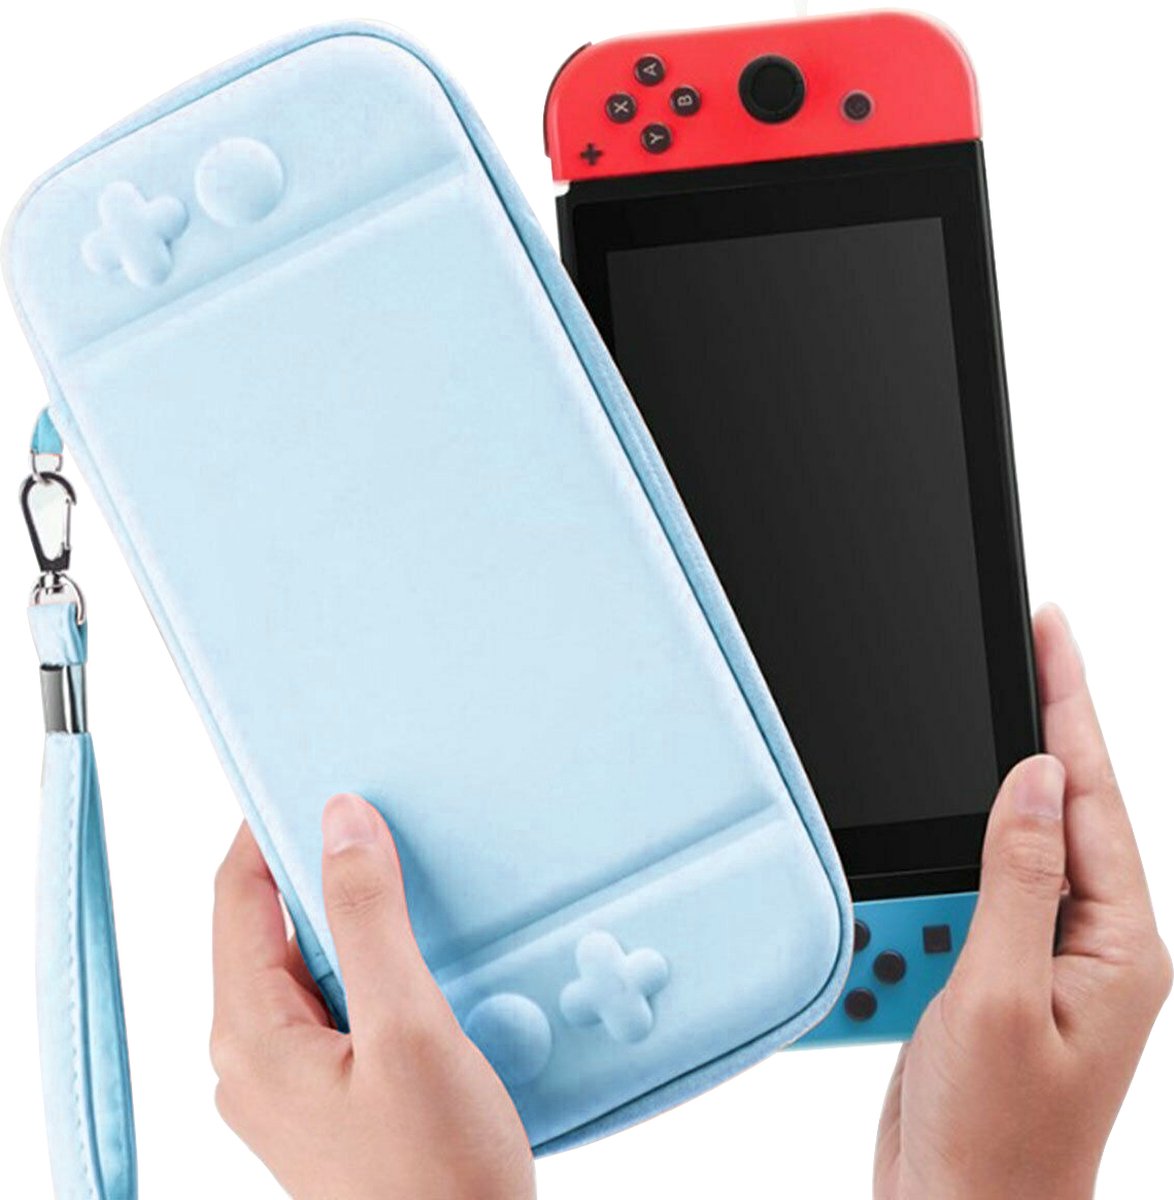 Yes In LAB - Beschermhoes geschikt voor Nintendo Switch/OLED met polsband - Hemelsblauw - Case - Opbergtas voor console en accessoires - Hoes - Hard Case - Cover